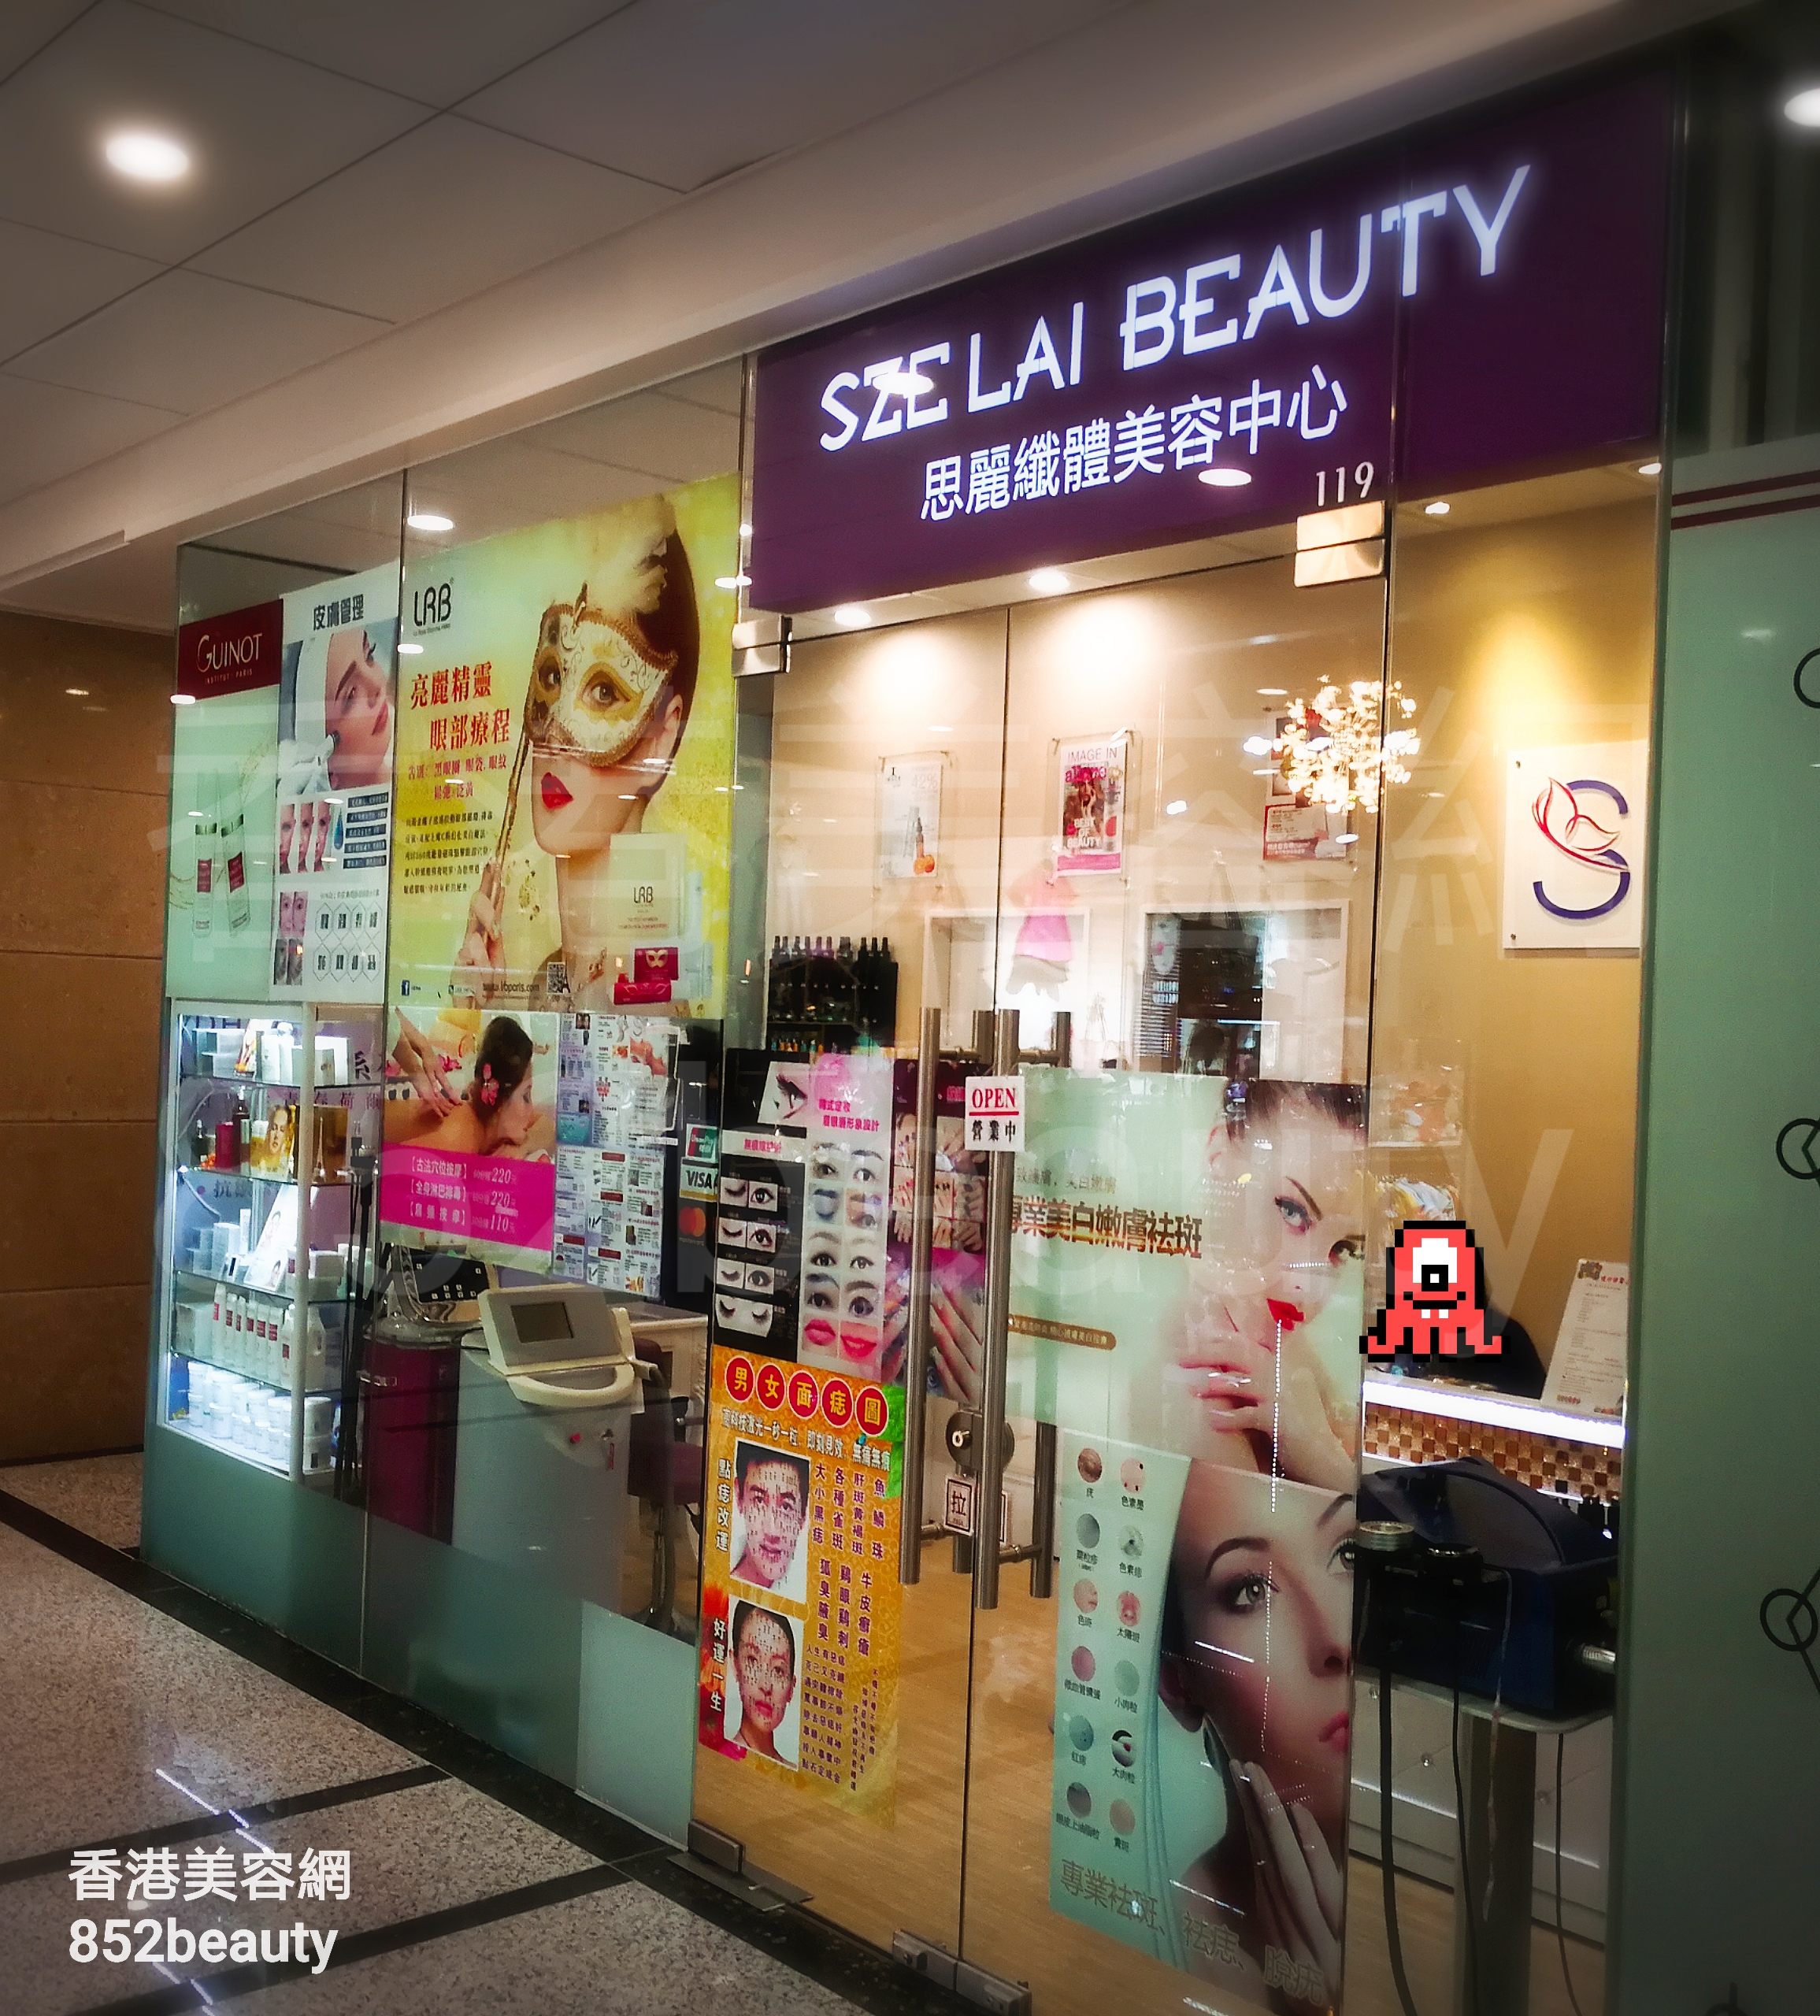 香港美容網 Hong Kong Beauty Salon 美容院 / 美容師: 思麗纖體美容中心 SZE LAI BEAUTY